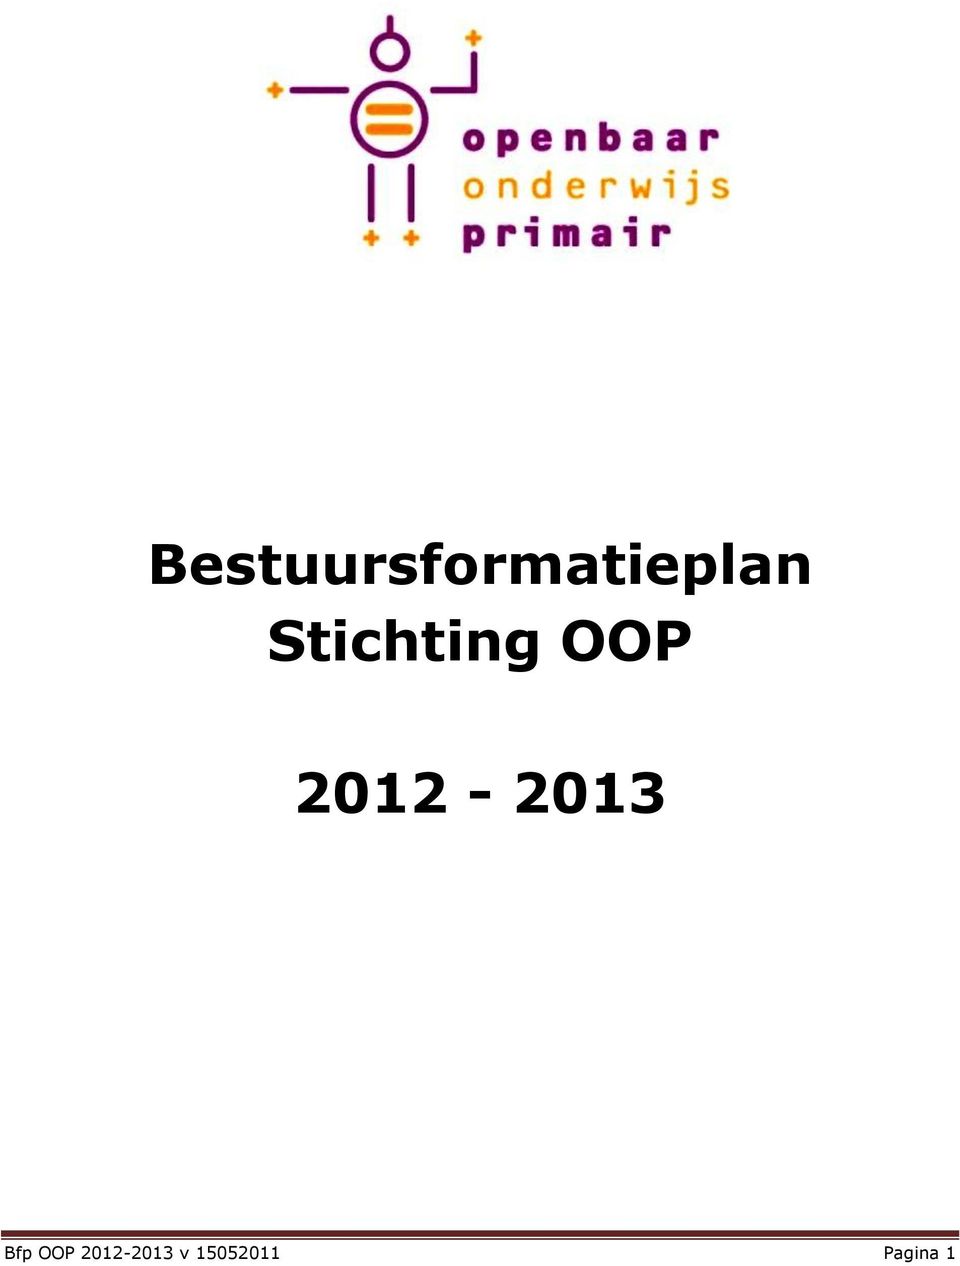 2012-2013 Bfp OOP